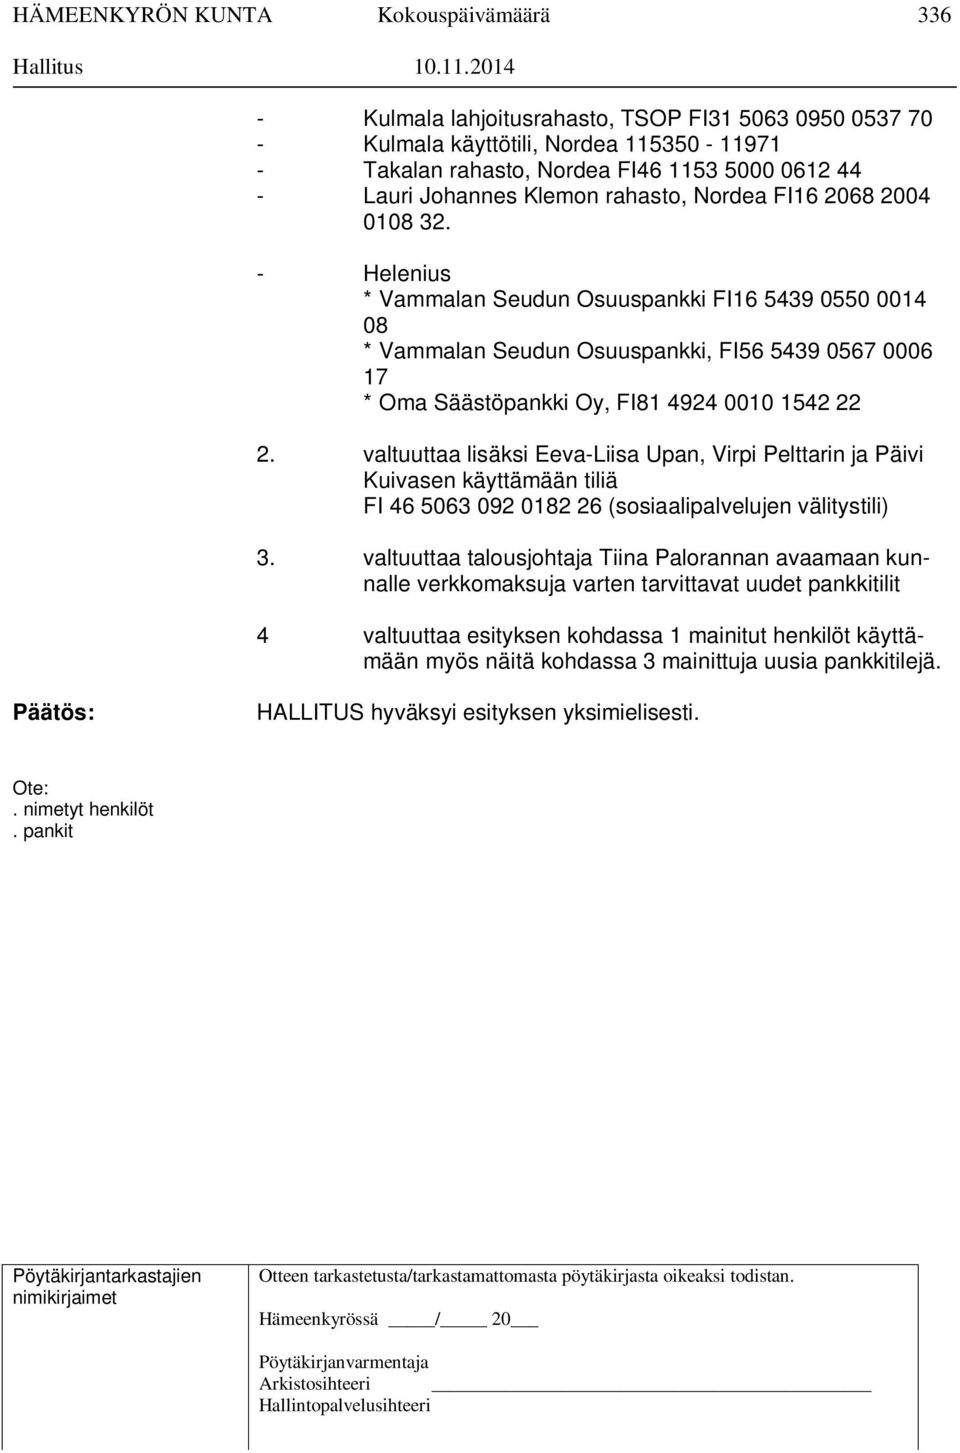 valtuuttaa lisäksi Eeva-Liisa Upan, Virpi Pelttarin ja Päivi Kuivasen käyttämään tiliä FI 46 5063 092 0182 26 (sosiaalipalvelujen välitystili) 3.